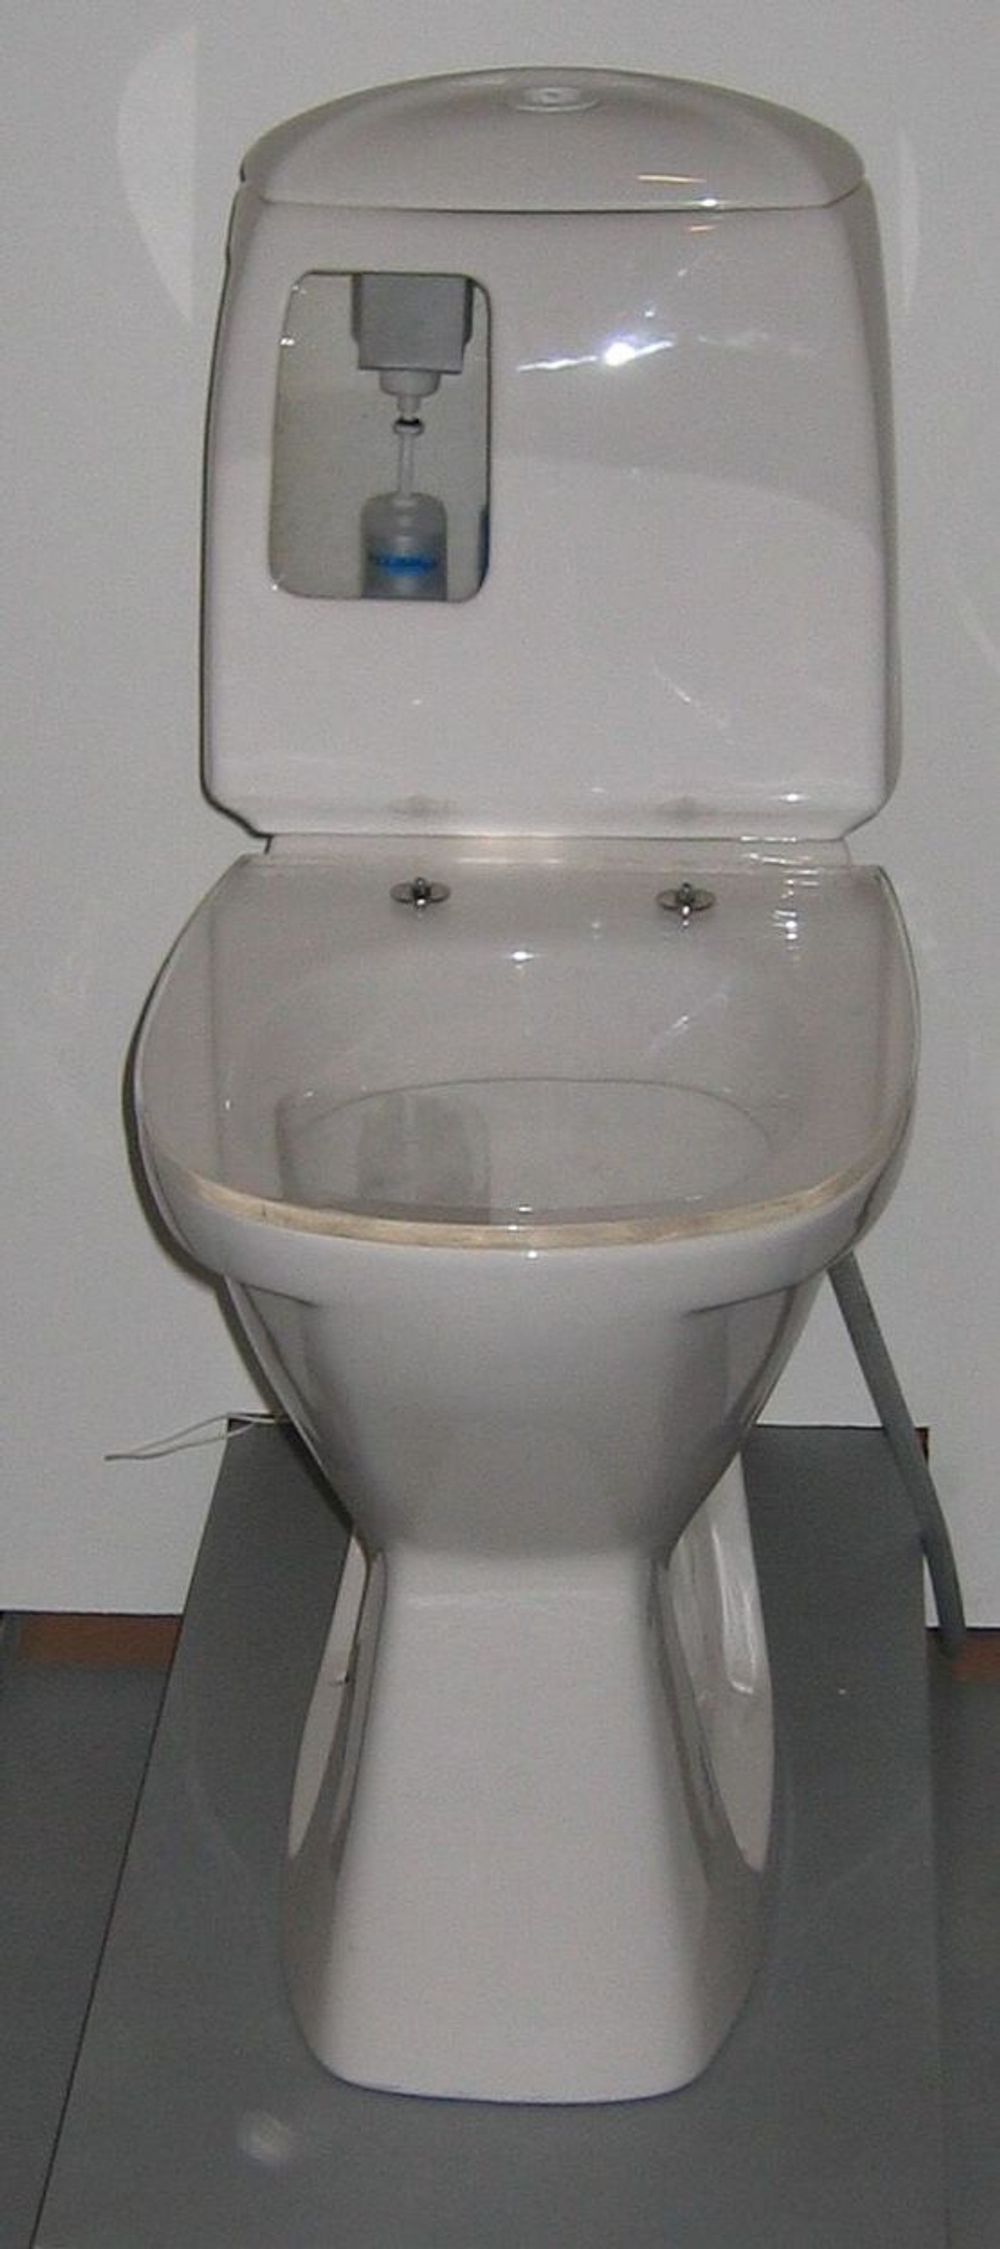 SKINNENDE RENT: Med Flush blir toalettet skinnende ren uten at man behøver å skrubbe med kost. Et bedre bilde enn dette var ikke de fire oppfinnerne villig til å vise frem foreløpig på grunn av patentsøk.